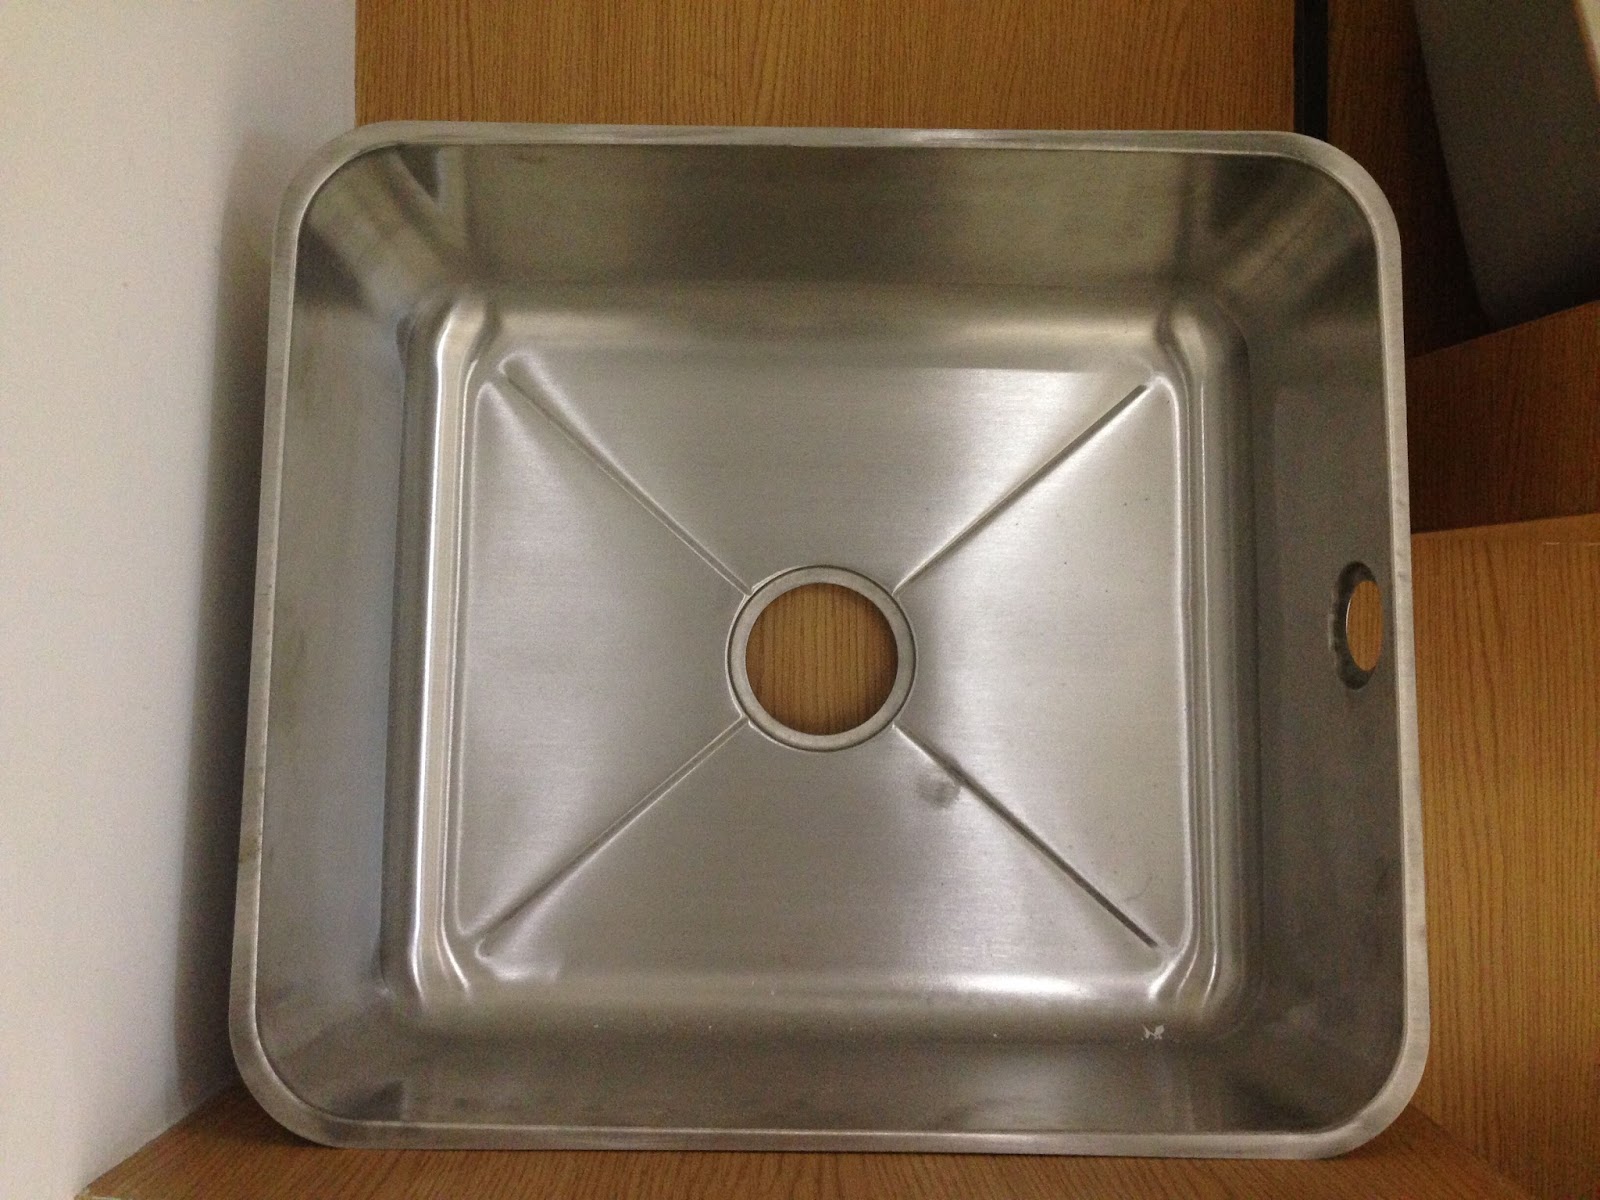 Stainless Steel Kitchen Sink Manufacturer Free Used Kitchen